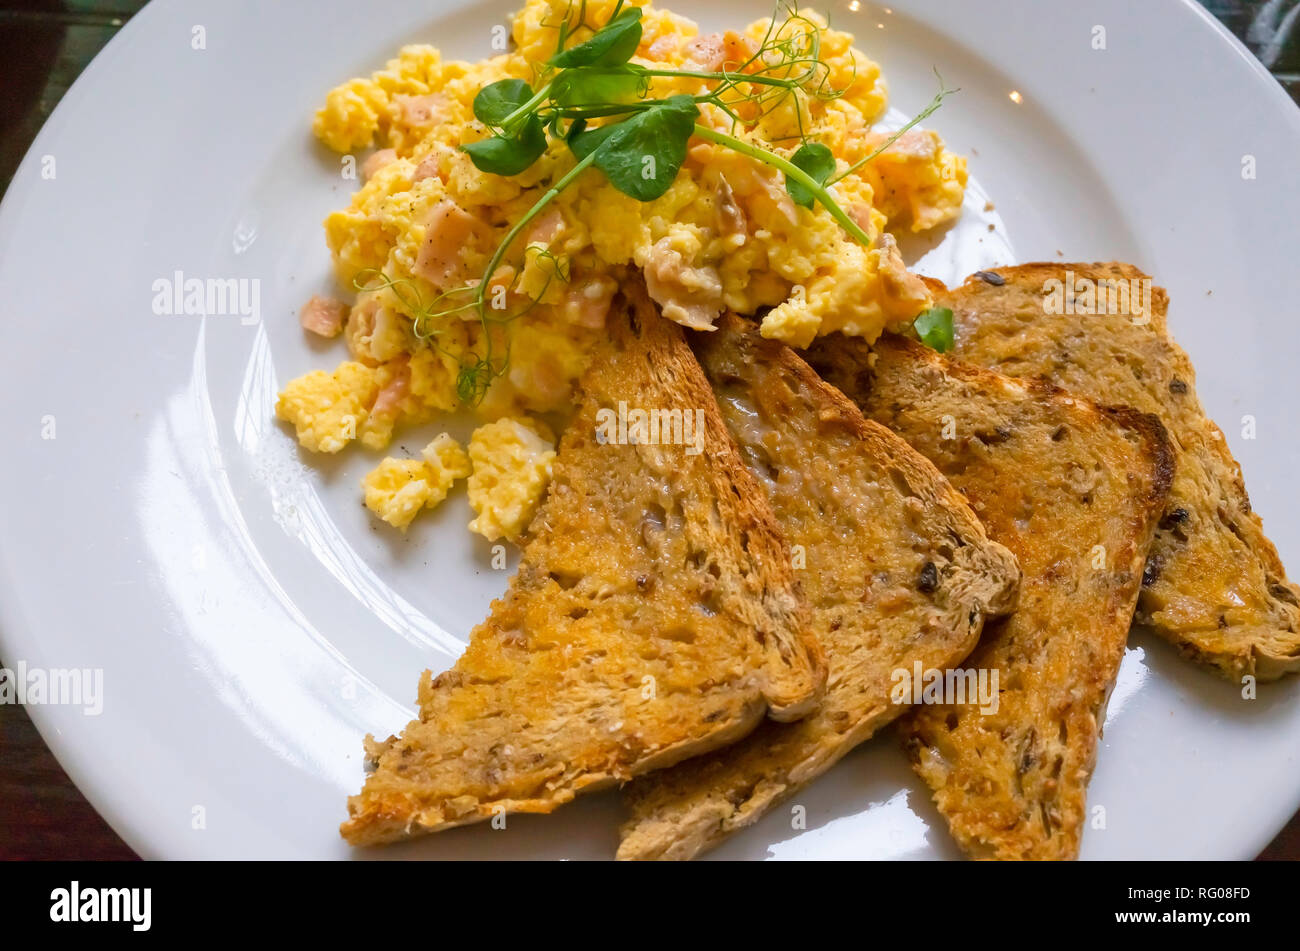 La colazione brunch o inizio pranzo in una caffetteria uova strapazzate con salmone affumicato e multi grano pane tostato e crescione guarnire Foto Stock